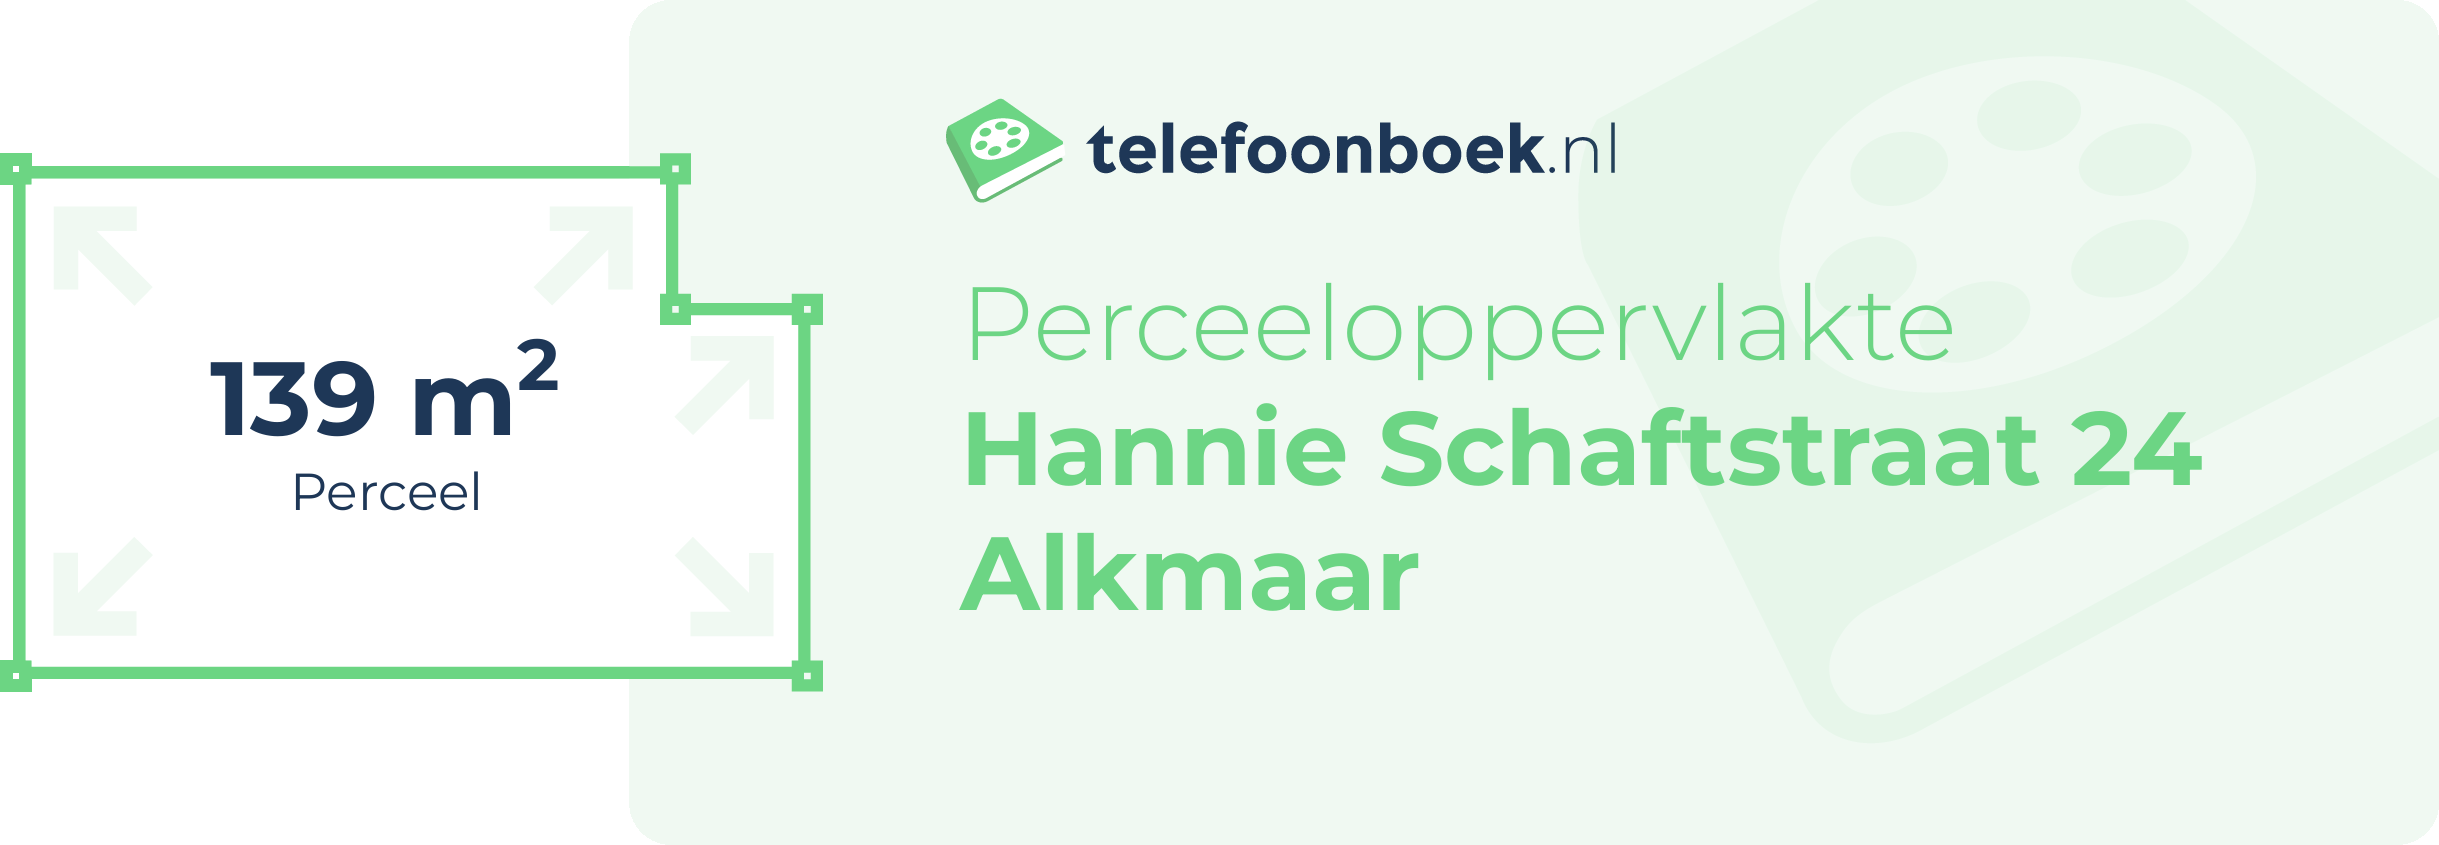 Perceeloppervlakte Hannie Schaftstraat 24 Alkmaar